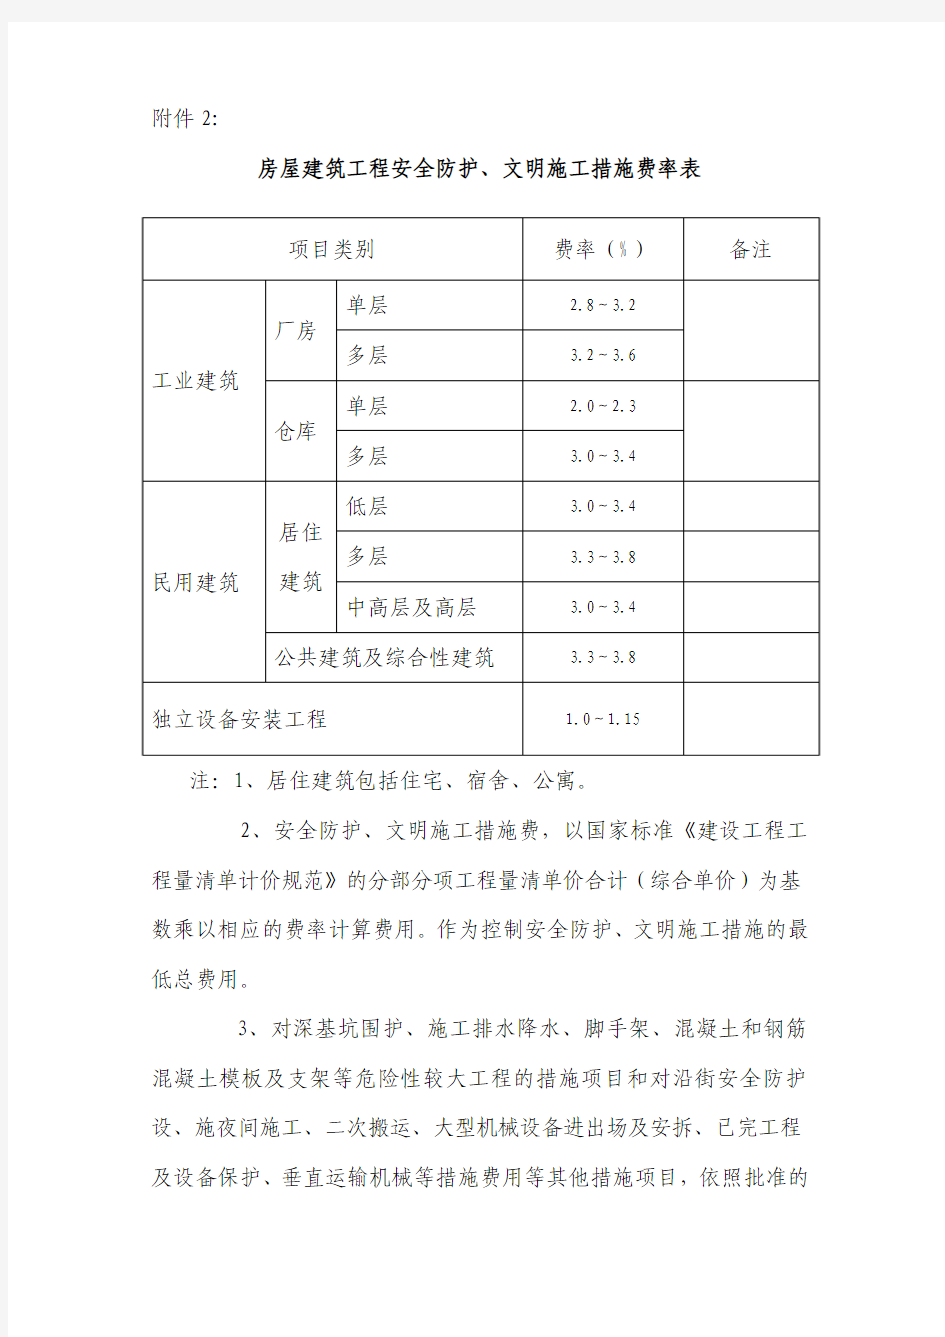 上海市建设工程安全防护、文明施工措施费用管理暂行规定 附件2措施费率表